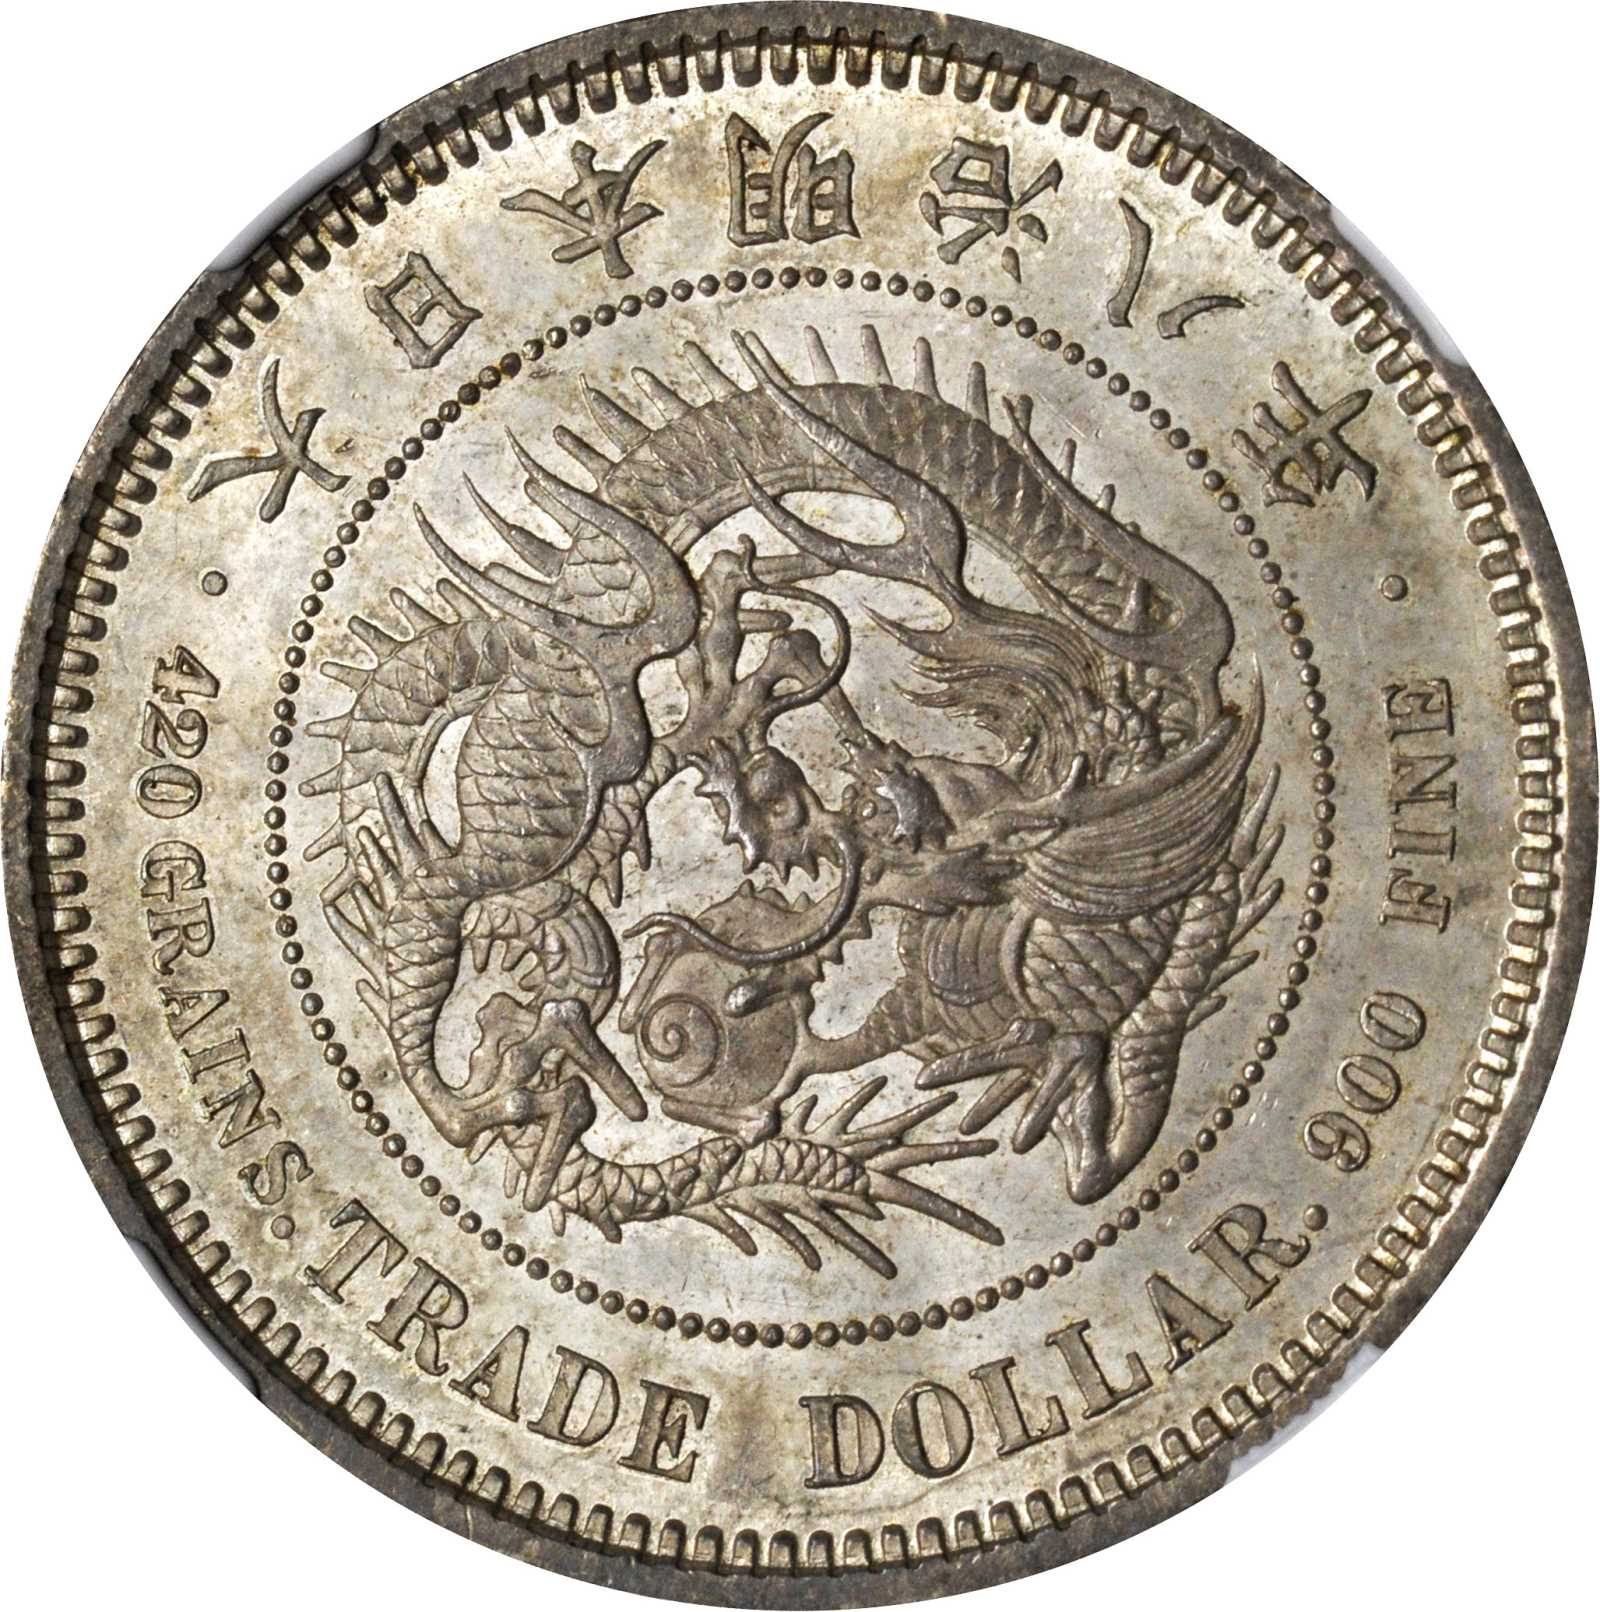 JAPAN. Trade Dollar, Year 8 (1875). Meiji. NGC MS-66. | Stacks Bowers